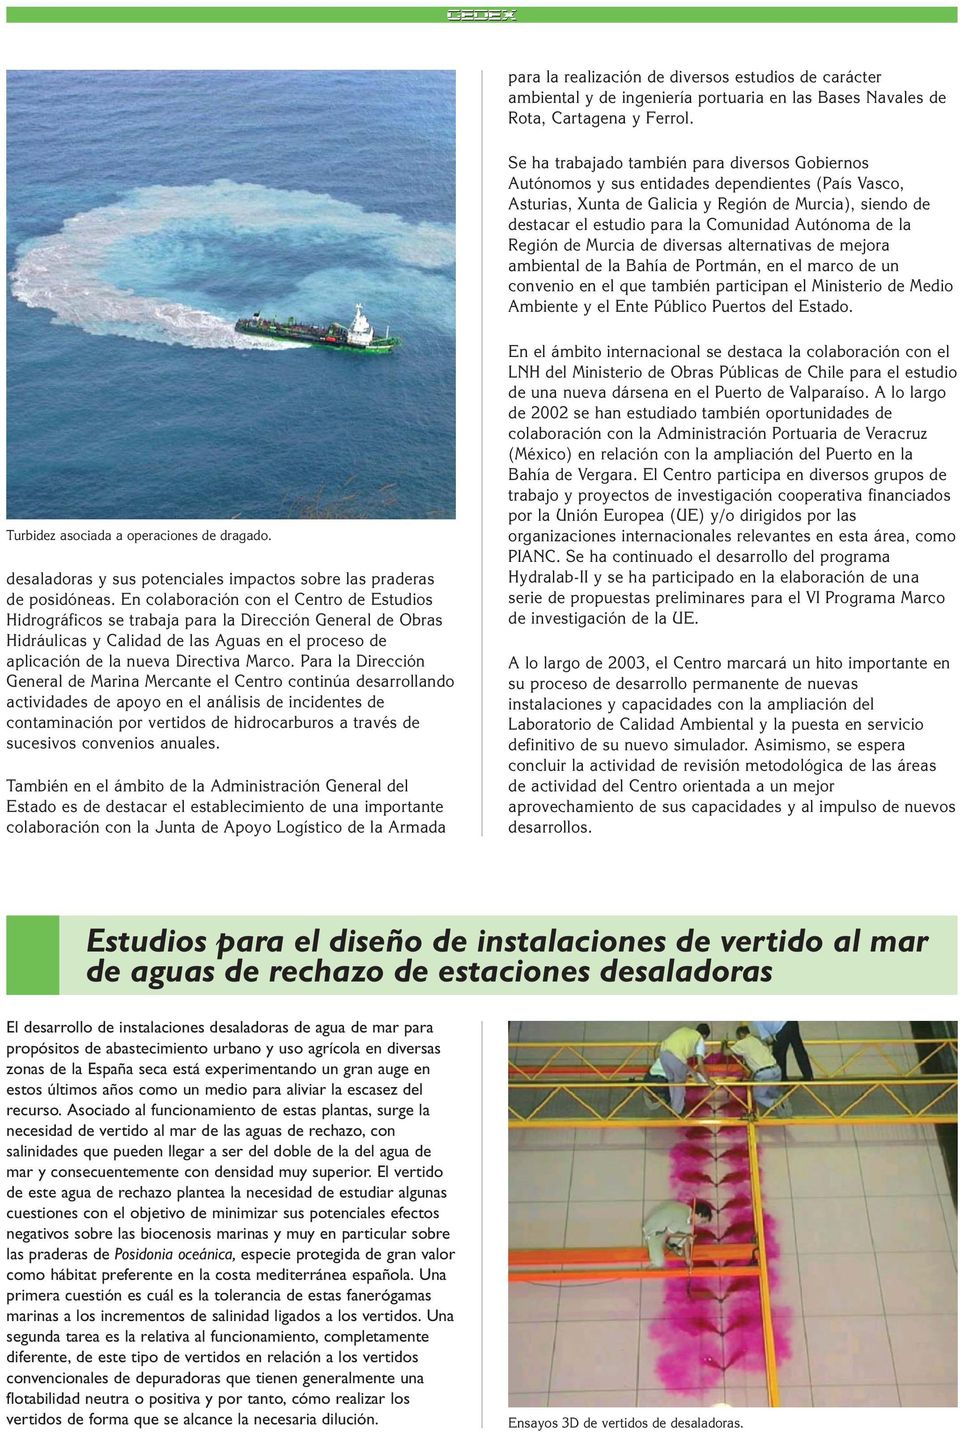 Autónoma de la Región de Murcia de diversas alternativas de mejora ambiental de la Bahía de Portmán, en el marco de un convenio en el que también participan el Ministerio de Medio Ambiente y el Ente